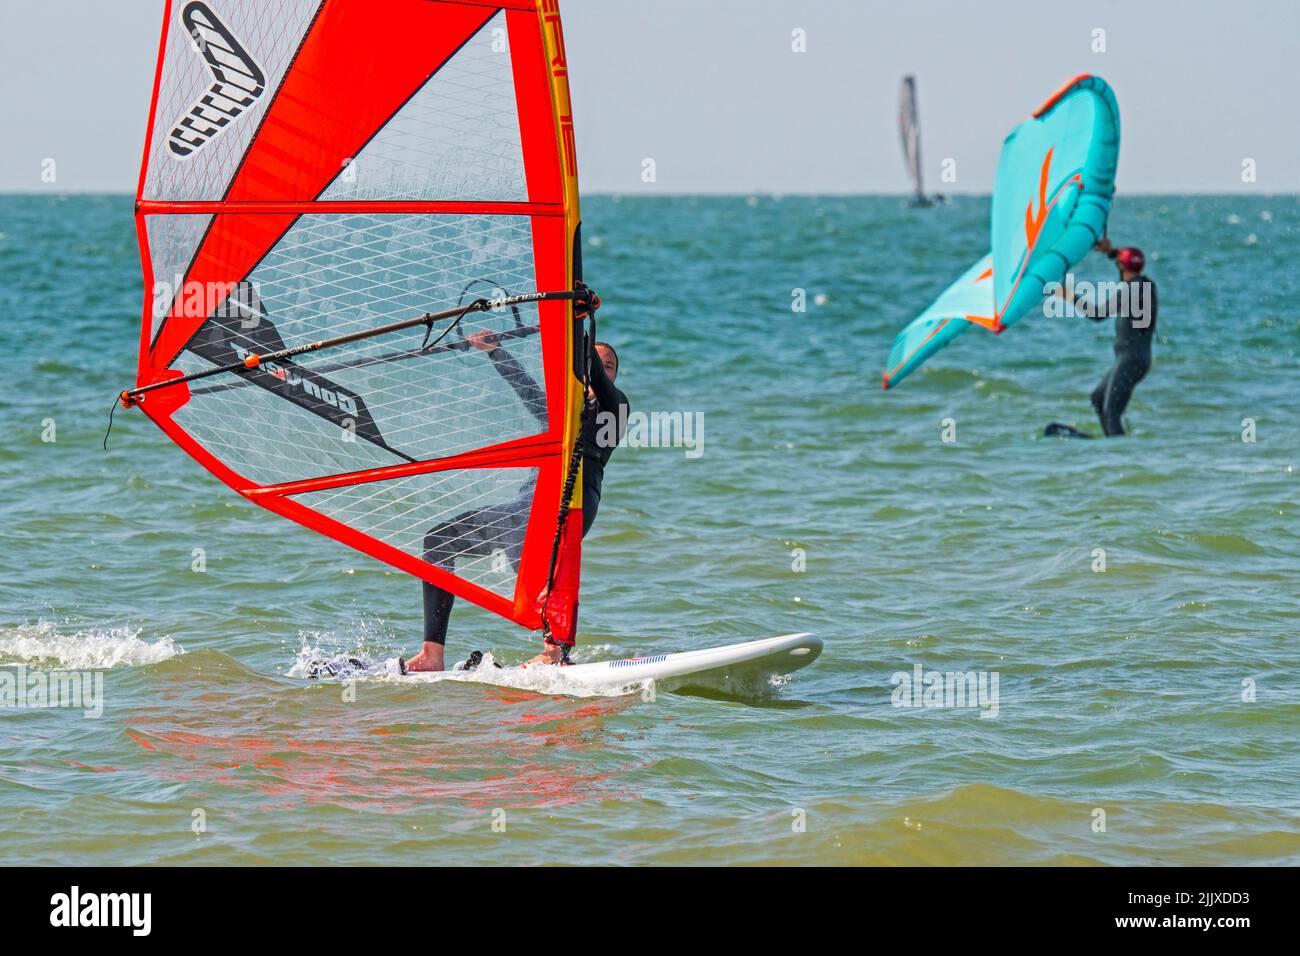 Mädchen / weibliche Freizeit Windsurfer in schwarzem Neoprenanzug üben klassischen Windsurfen und Wingboarder / Wing Boarder Flügel foiling auf See Stockfoto